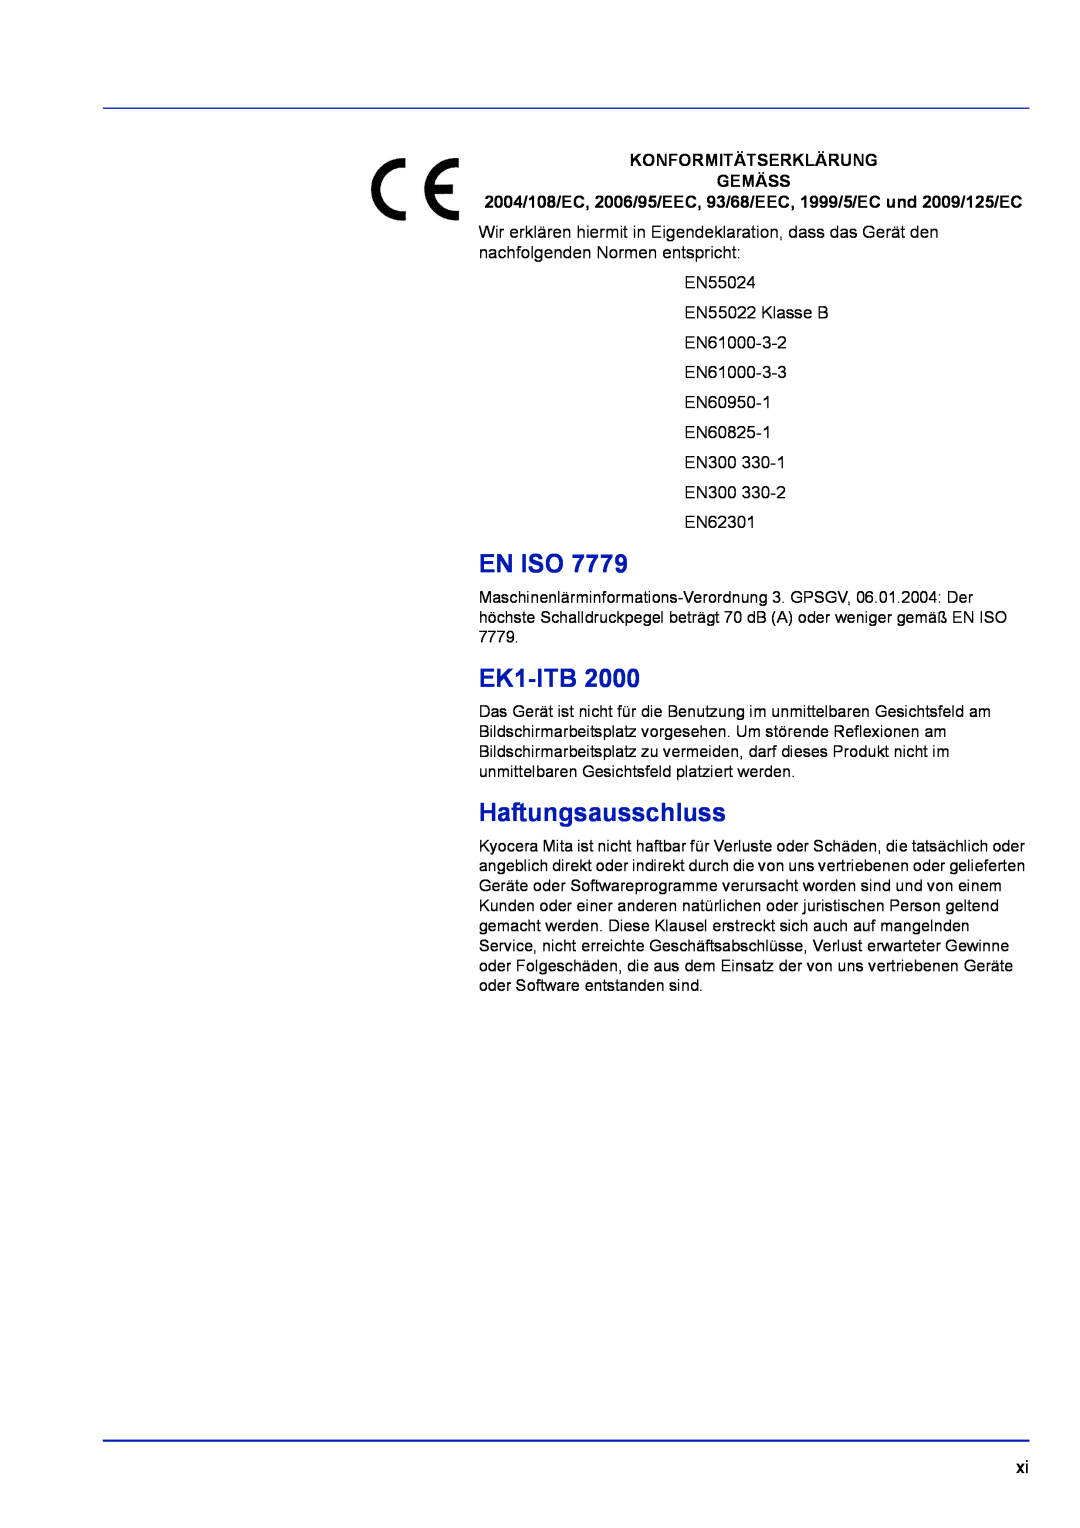 Kyocera FS-1320D, FS-1120D manual En Iso, EK1-ITB, Haftungsausschluss, Konformitätserklärung Gemäss 